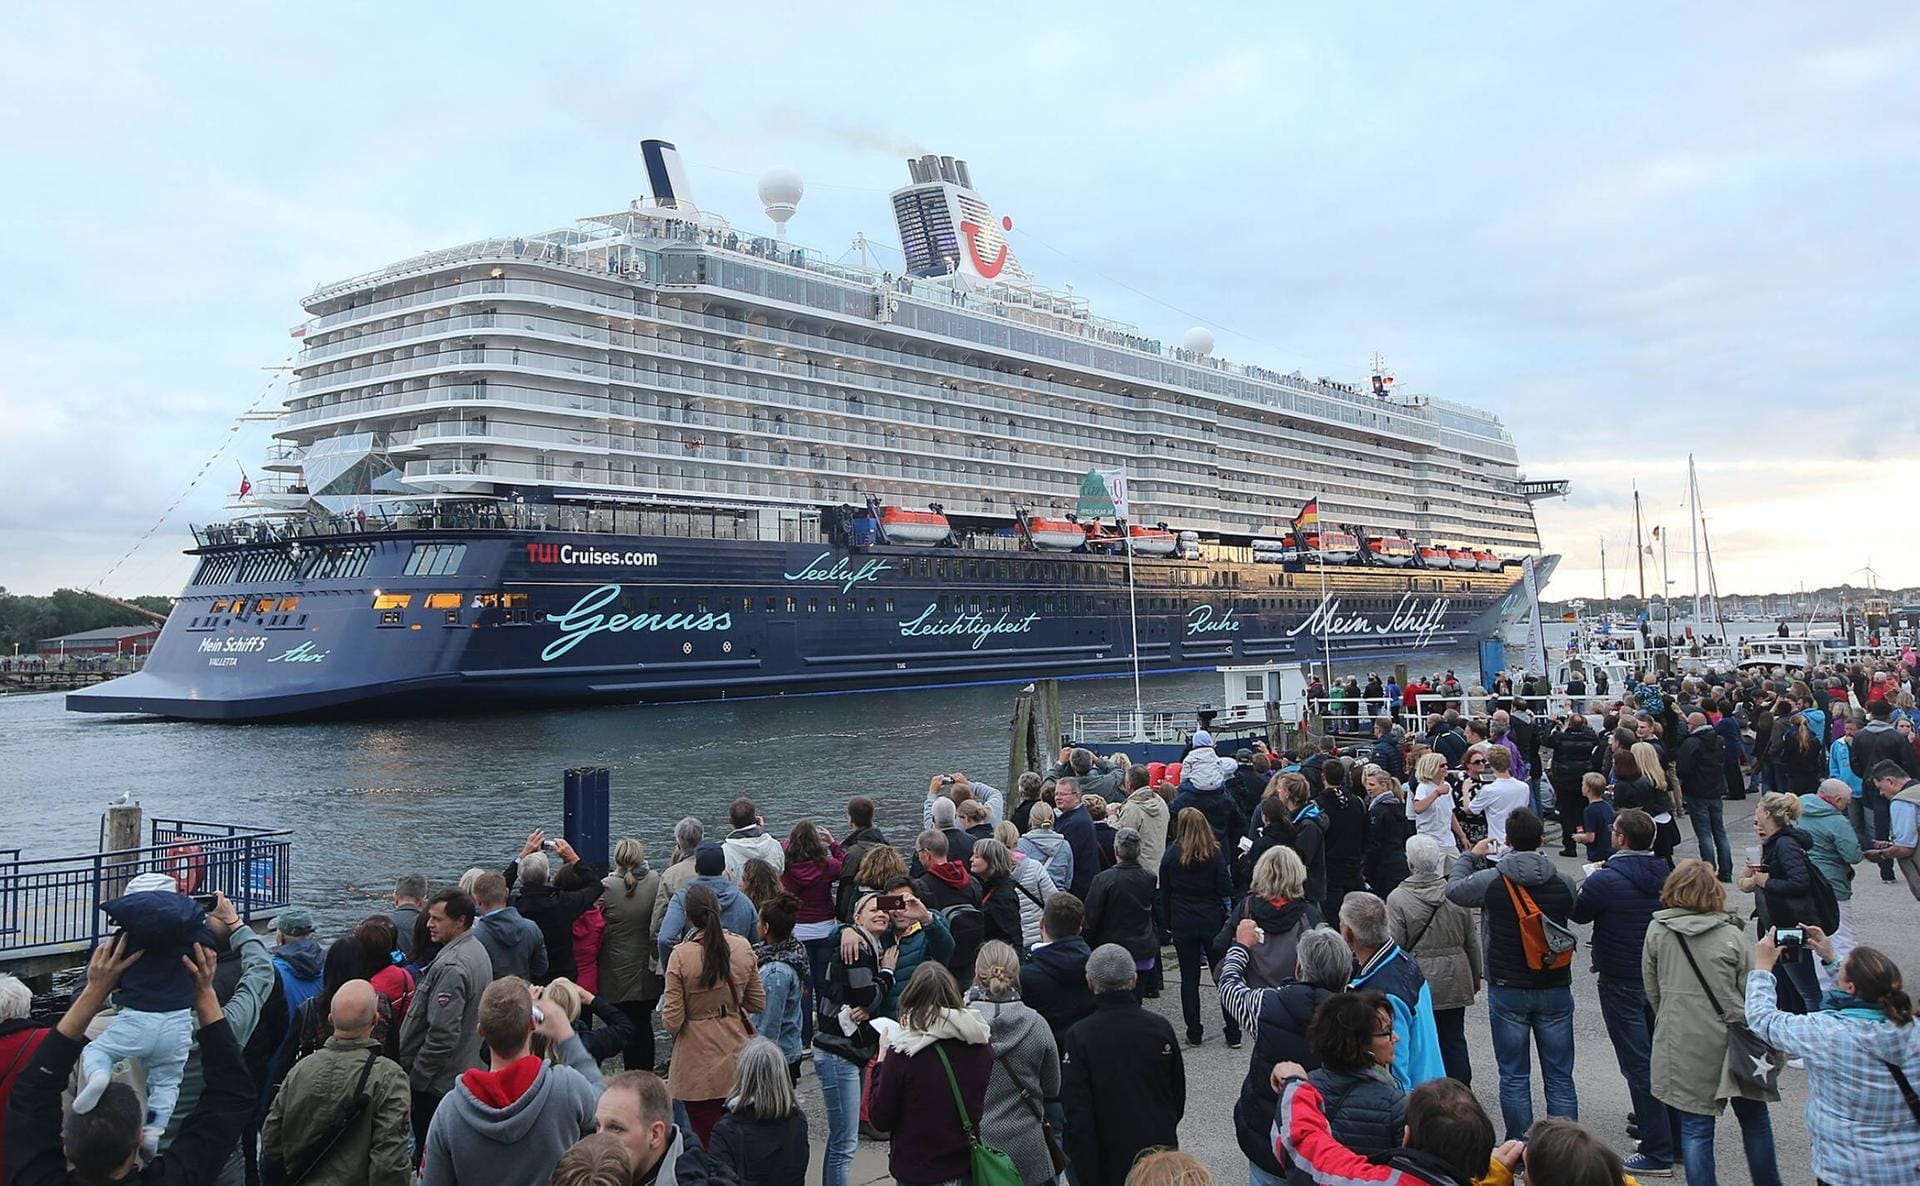 Kreuzfahrtschiffe zählen ab 2501 Passagiere in die Kategorie der großen Schiffe. Neben der "Queen Mary 2" schneiden die Schiffe von TUI Cruises besonders gut ab. Die neue "Mein Schiff 5" belegt auf Anhieb den 2. Platz.